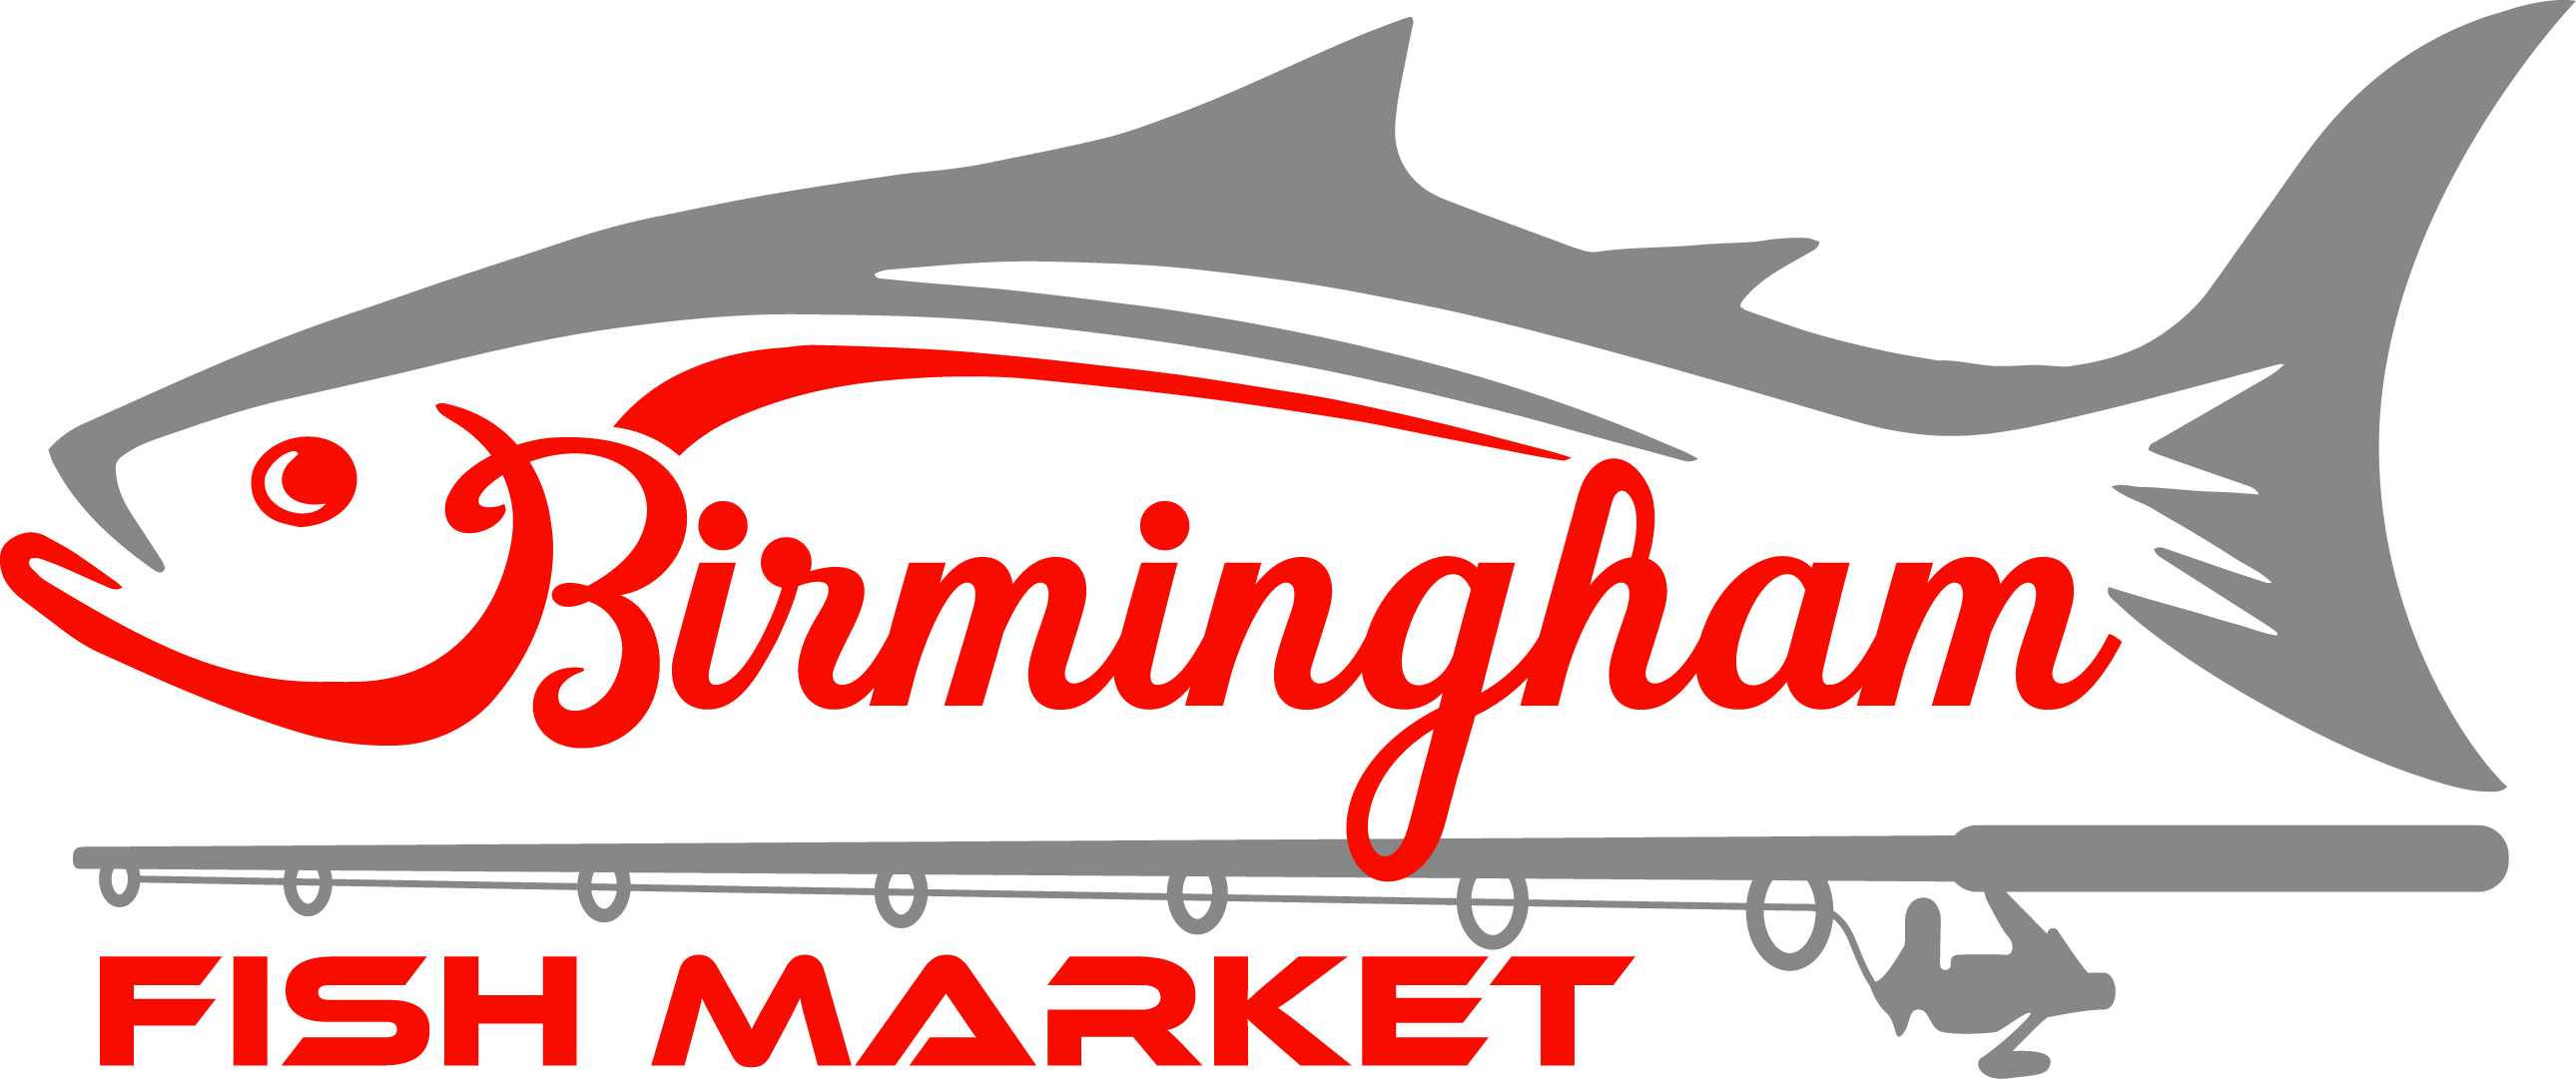 Contact - birmingham fish market